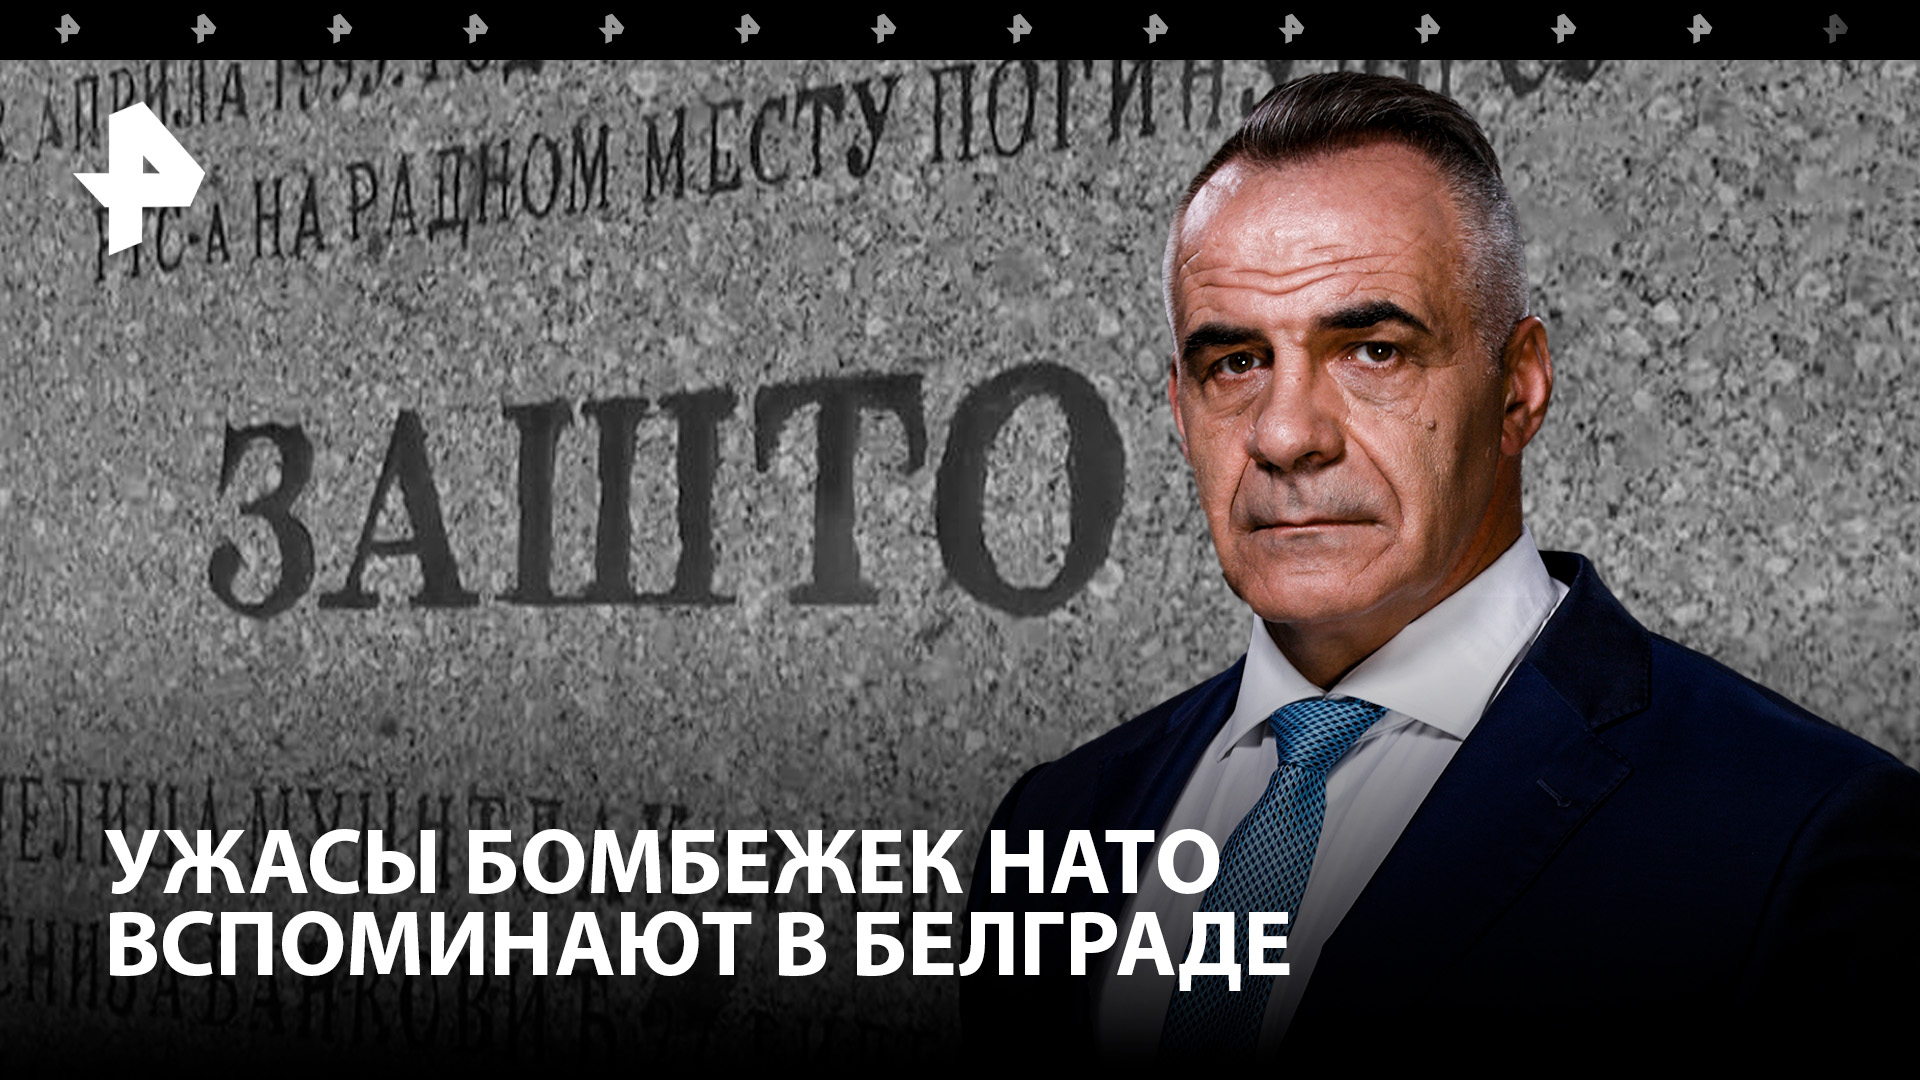 Отрубило половину тела: в Белграде вспоминают ужасы бомбежек НАТО / Итоги недели с Петром Марченко